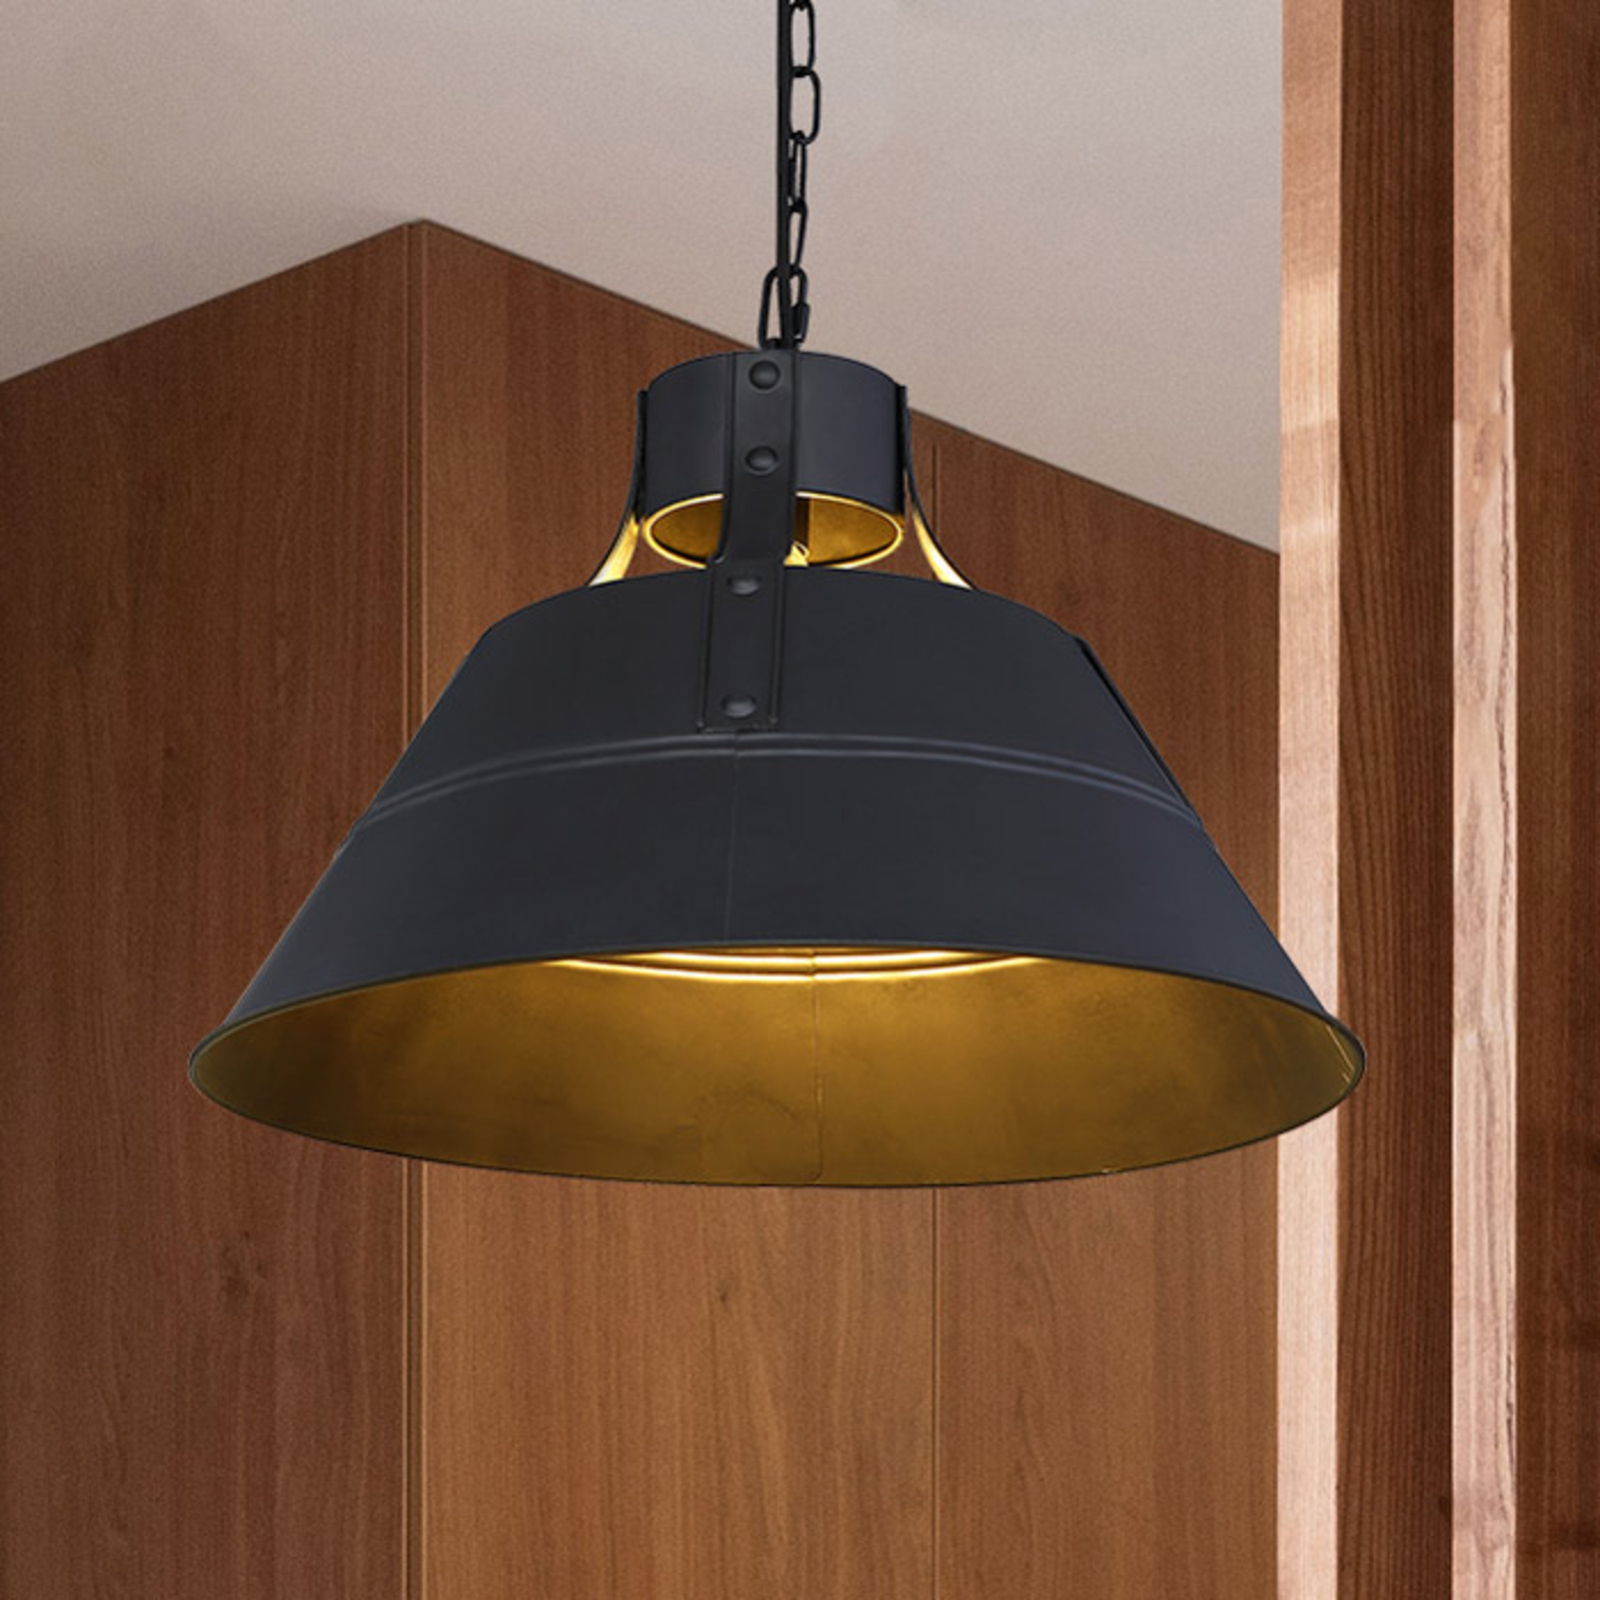 Günther hanging light, vintage design, black